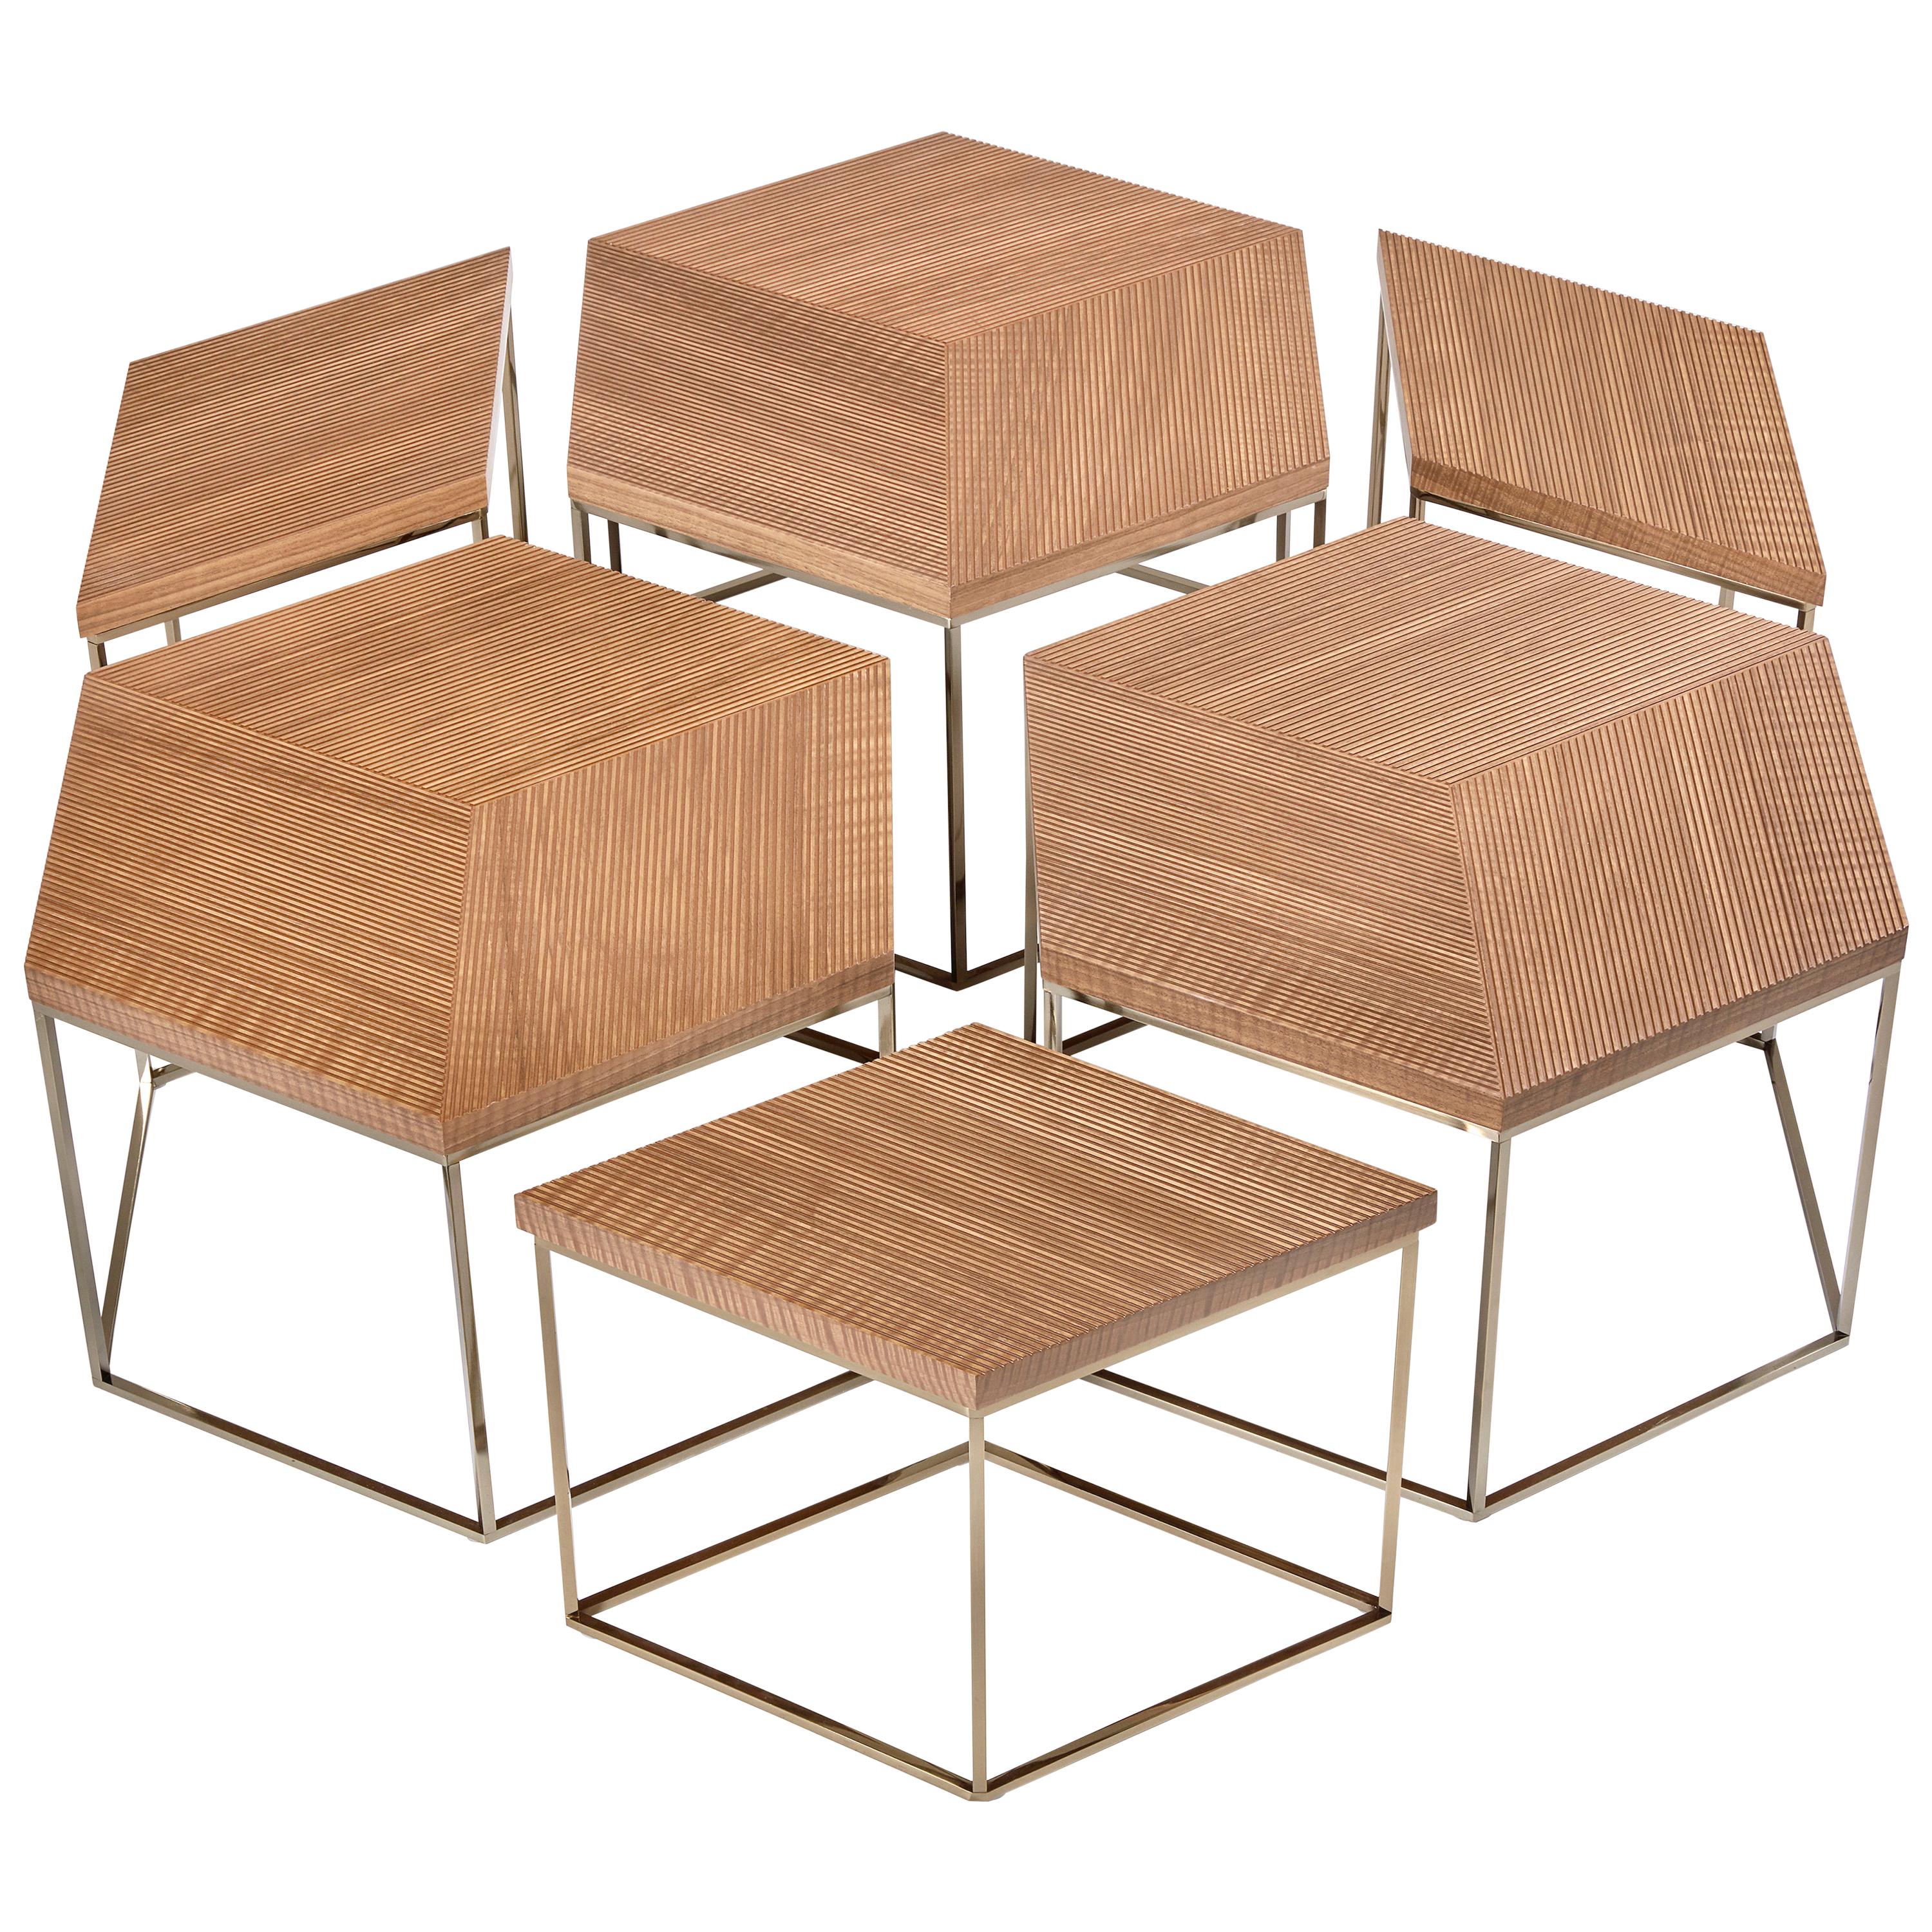 Esagon Coffee Table, Geometric Wood Top on Slim Metal Legs in Walnut Wood For Sale